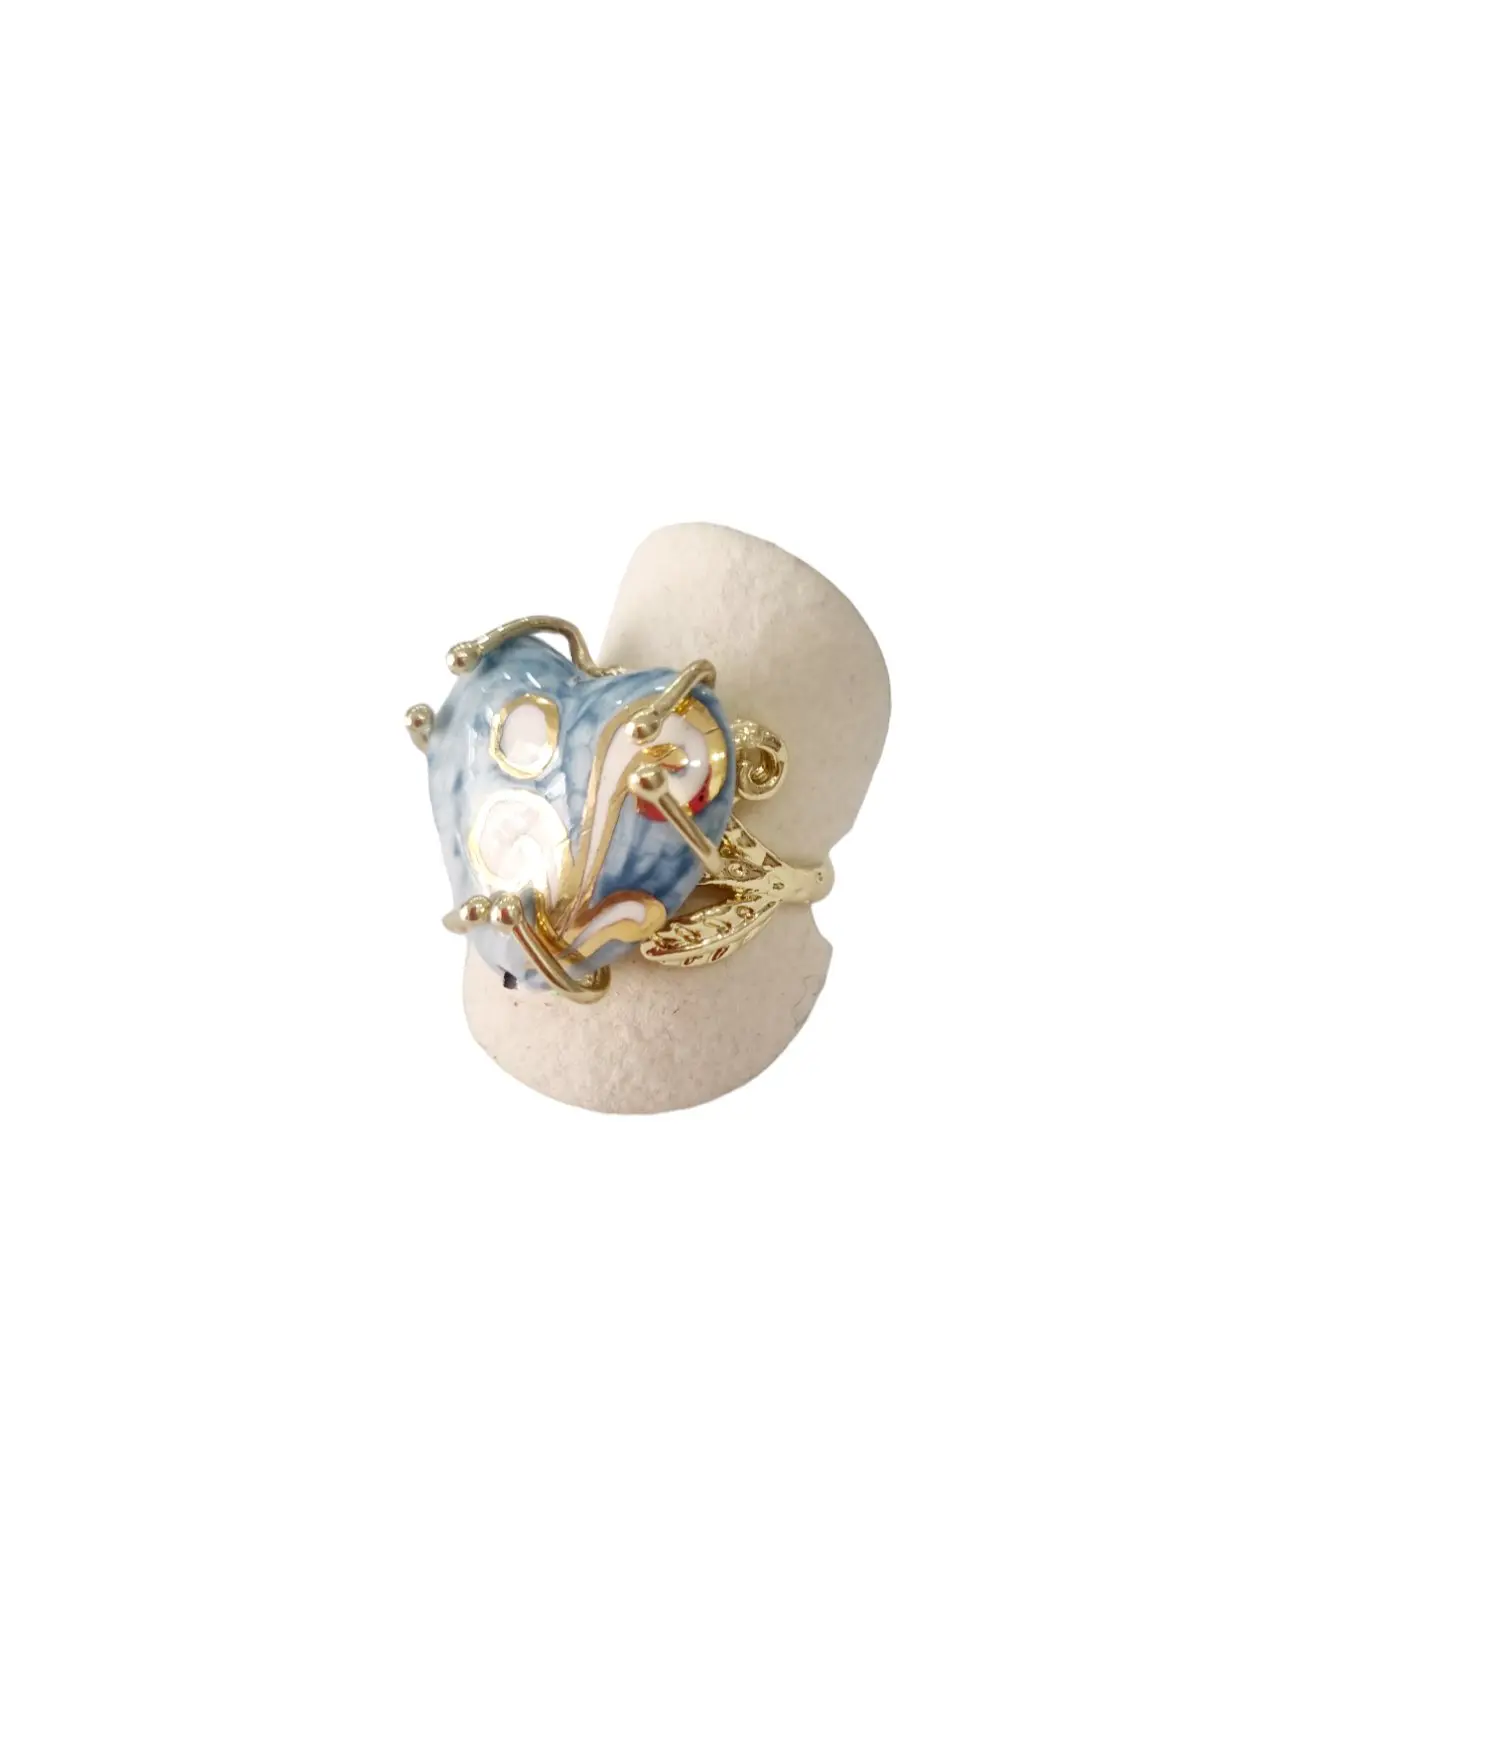 Anello regolabile su base in ottone con cuore dipinto su ceramica di Caltagirone.